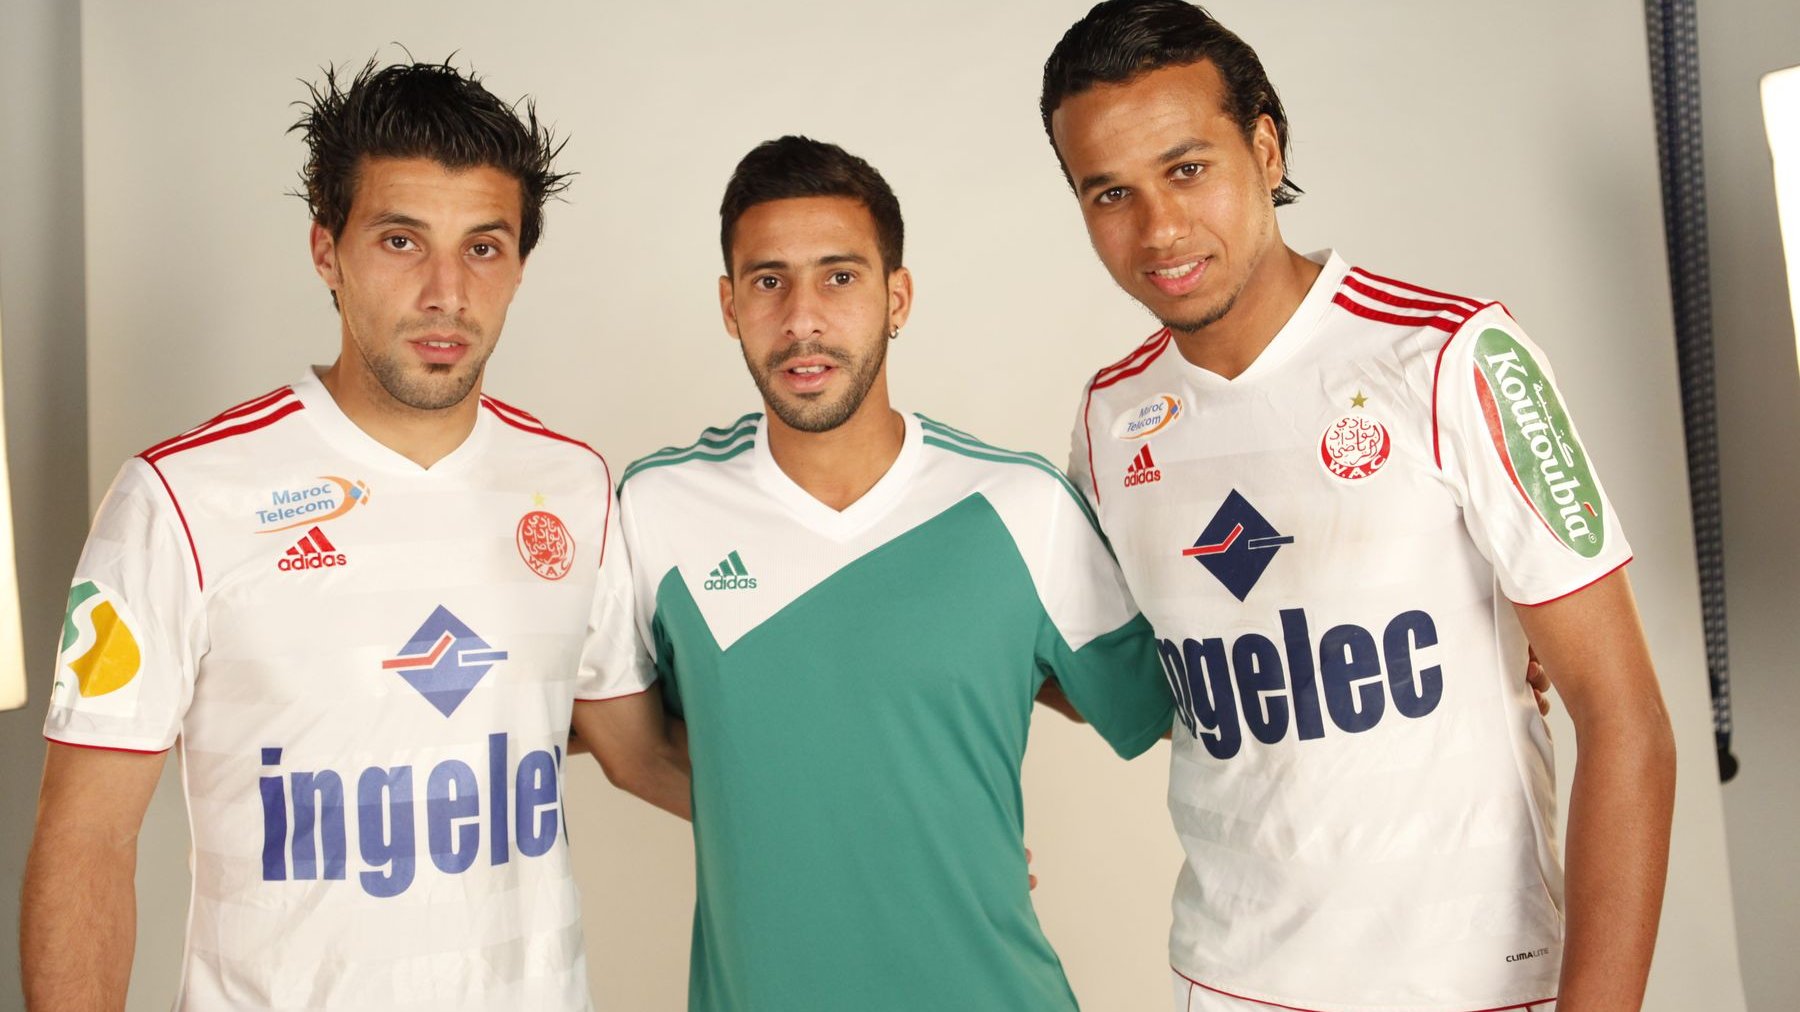 Une belle photo souvenir. Le rajaoui Mouhcine Moutouali entouré de Mohamed Berrabeh (g) et Ayoub El Khaliki.
